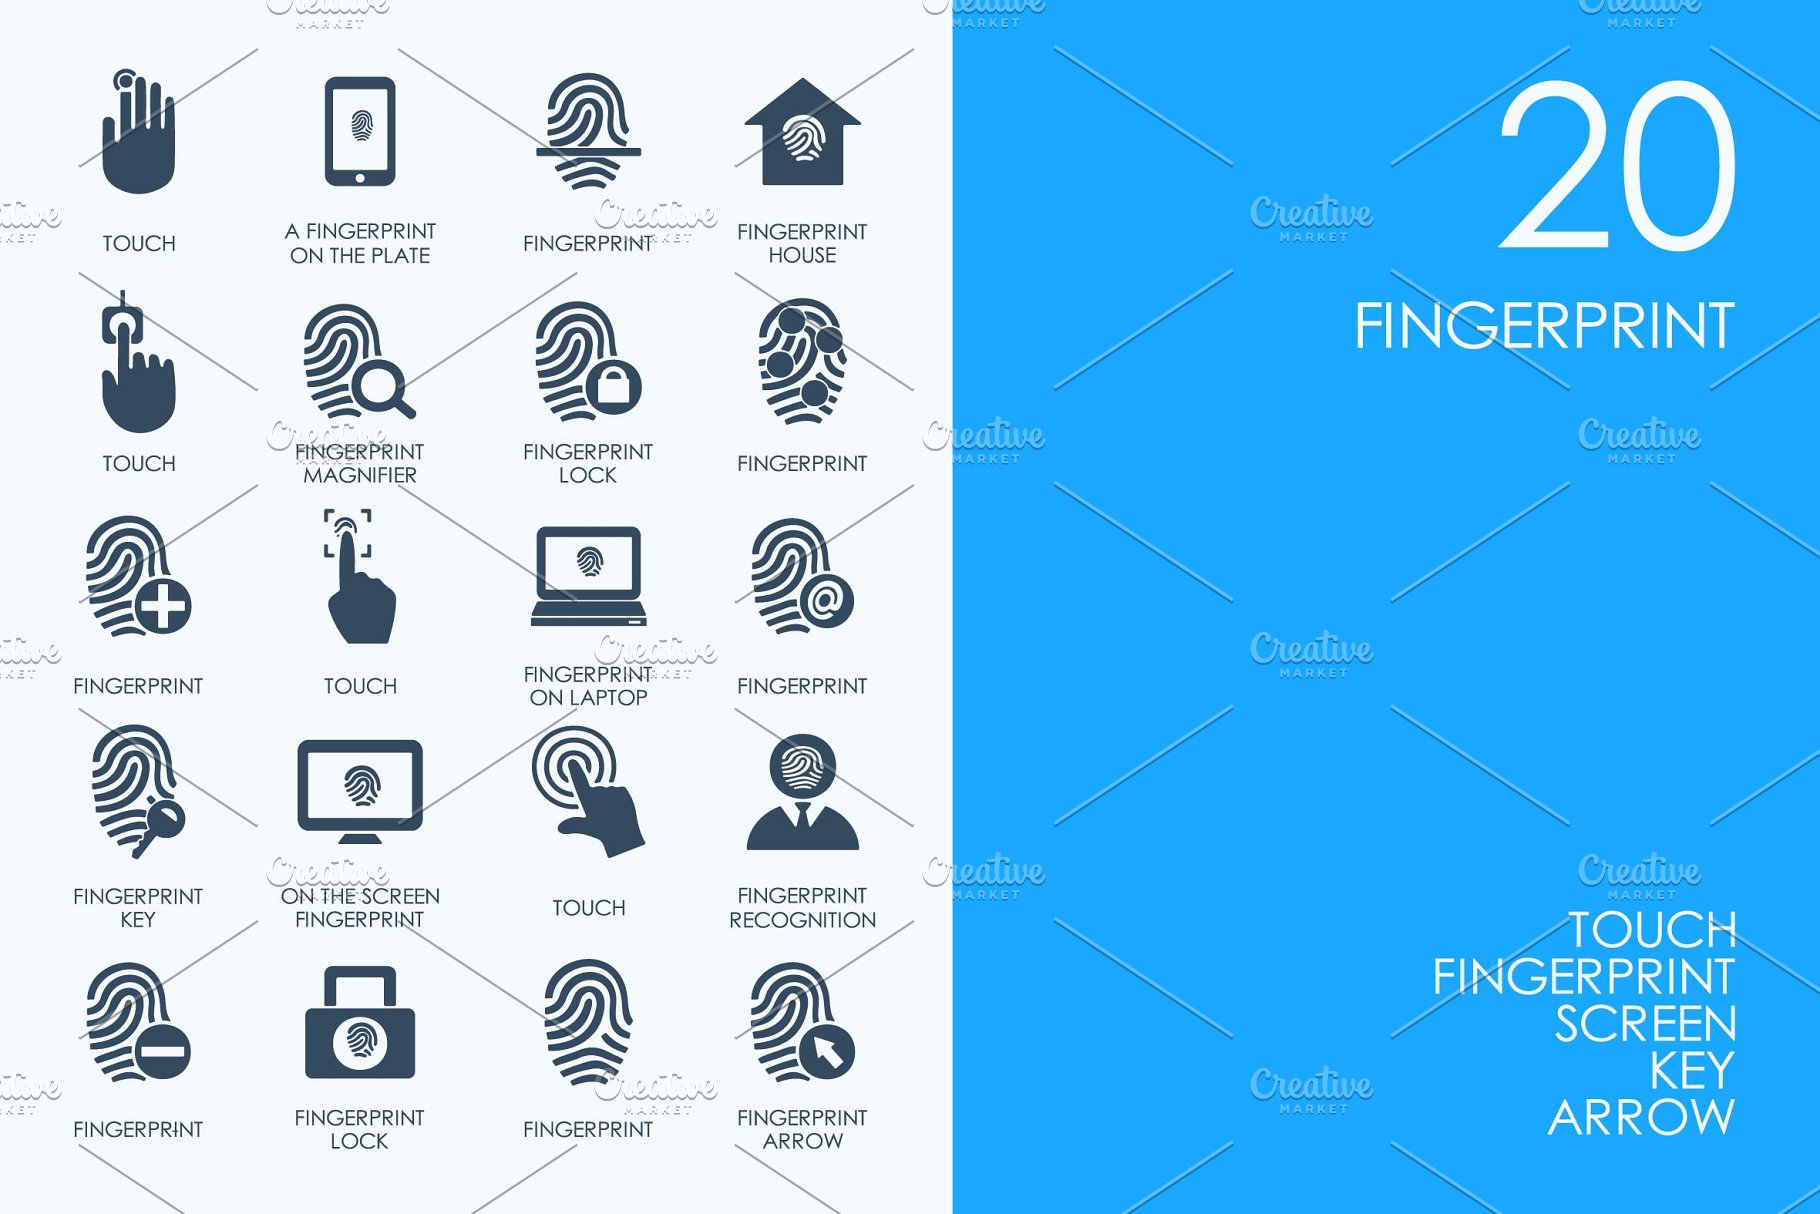 指纹识别的相关图标 Fingerprint icons #9